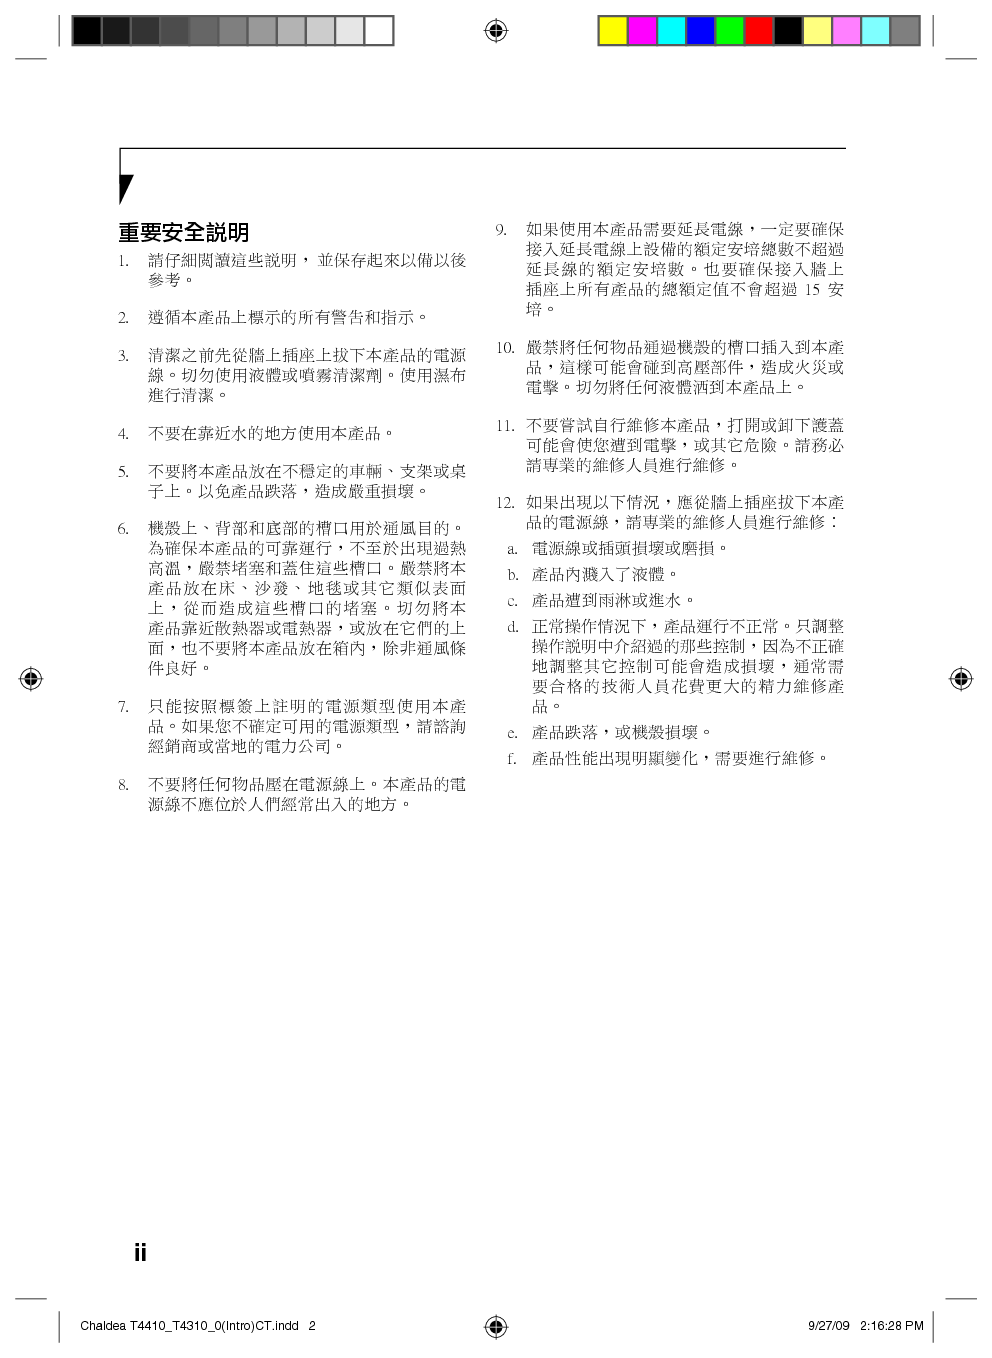 富士通 Fujitsu Lifebook T4310 繁体 使用说明书 第1页